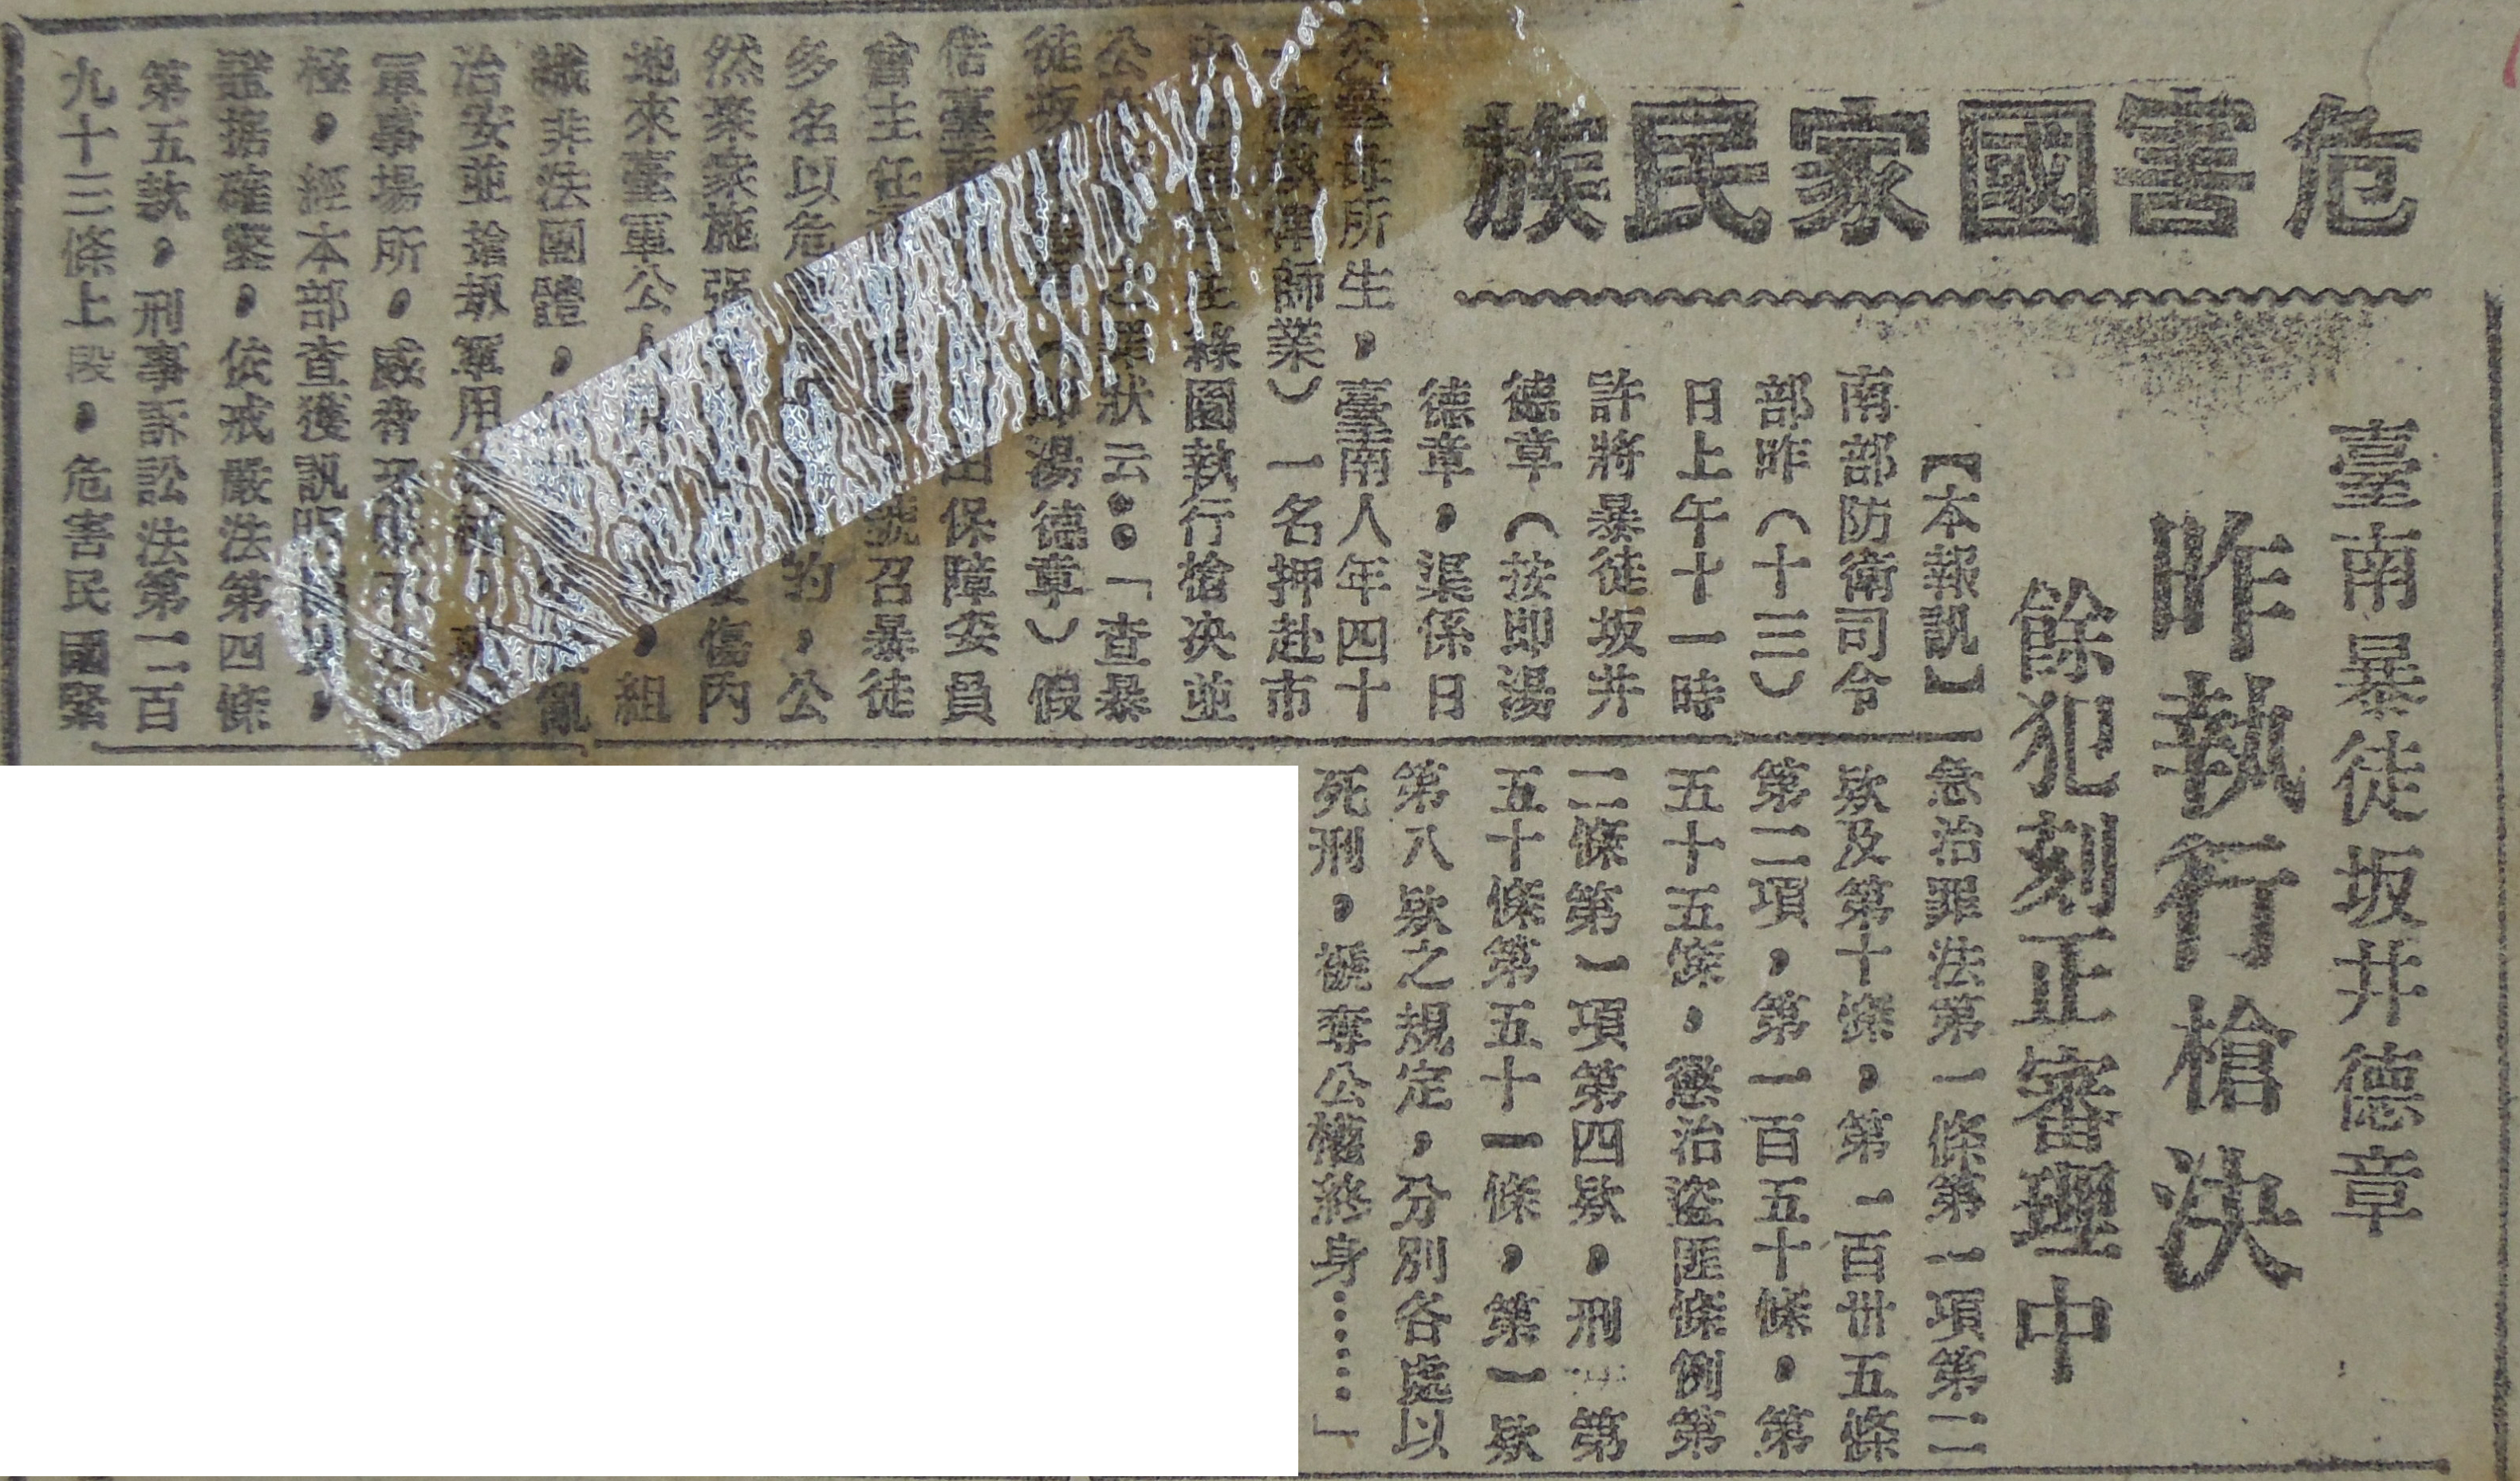 湯德章相關新聞報導（《中華日報》，1947年3月10、14日）